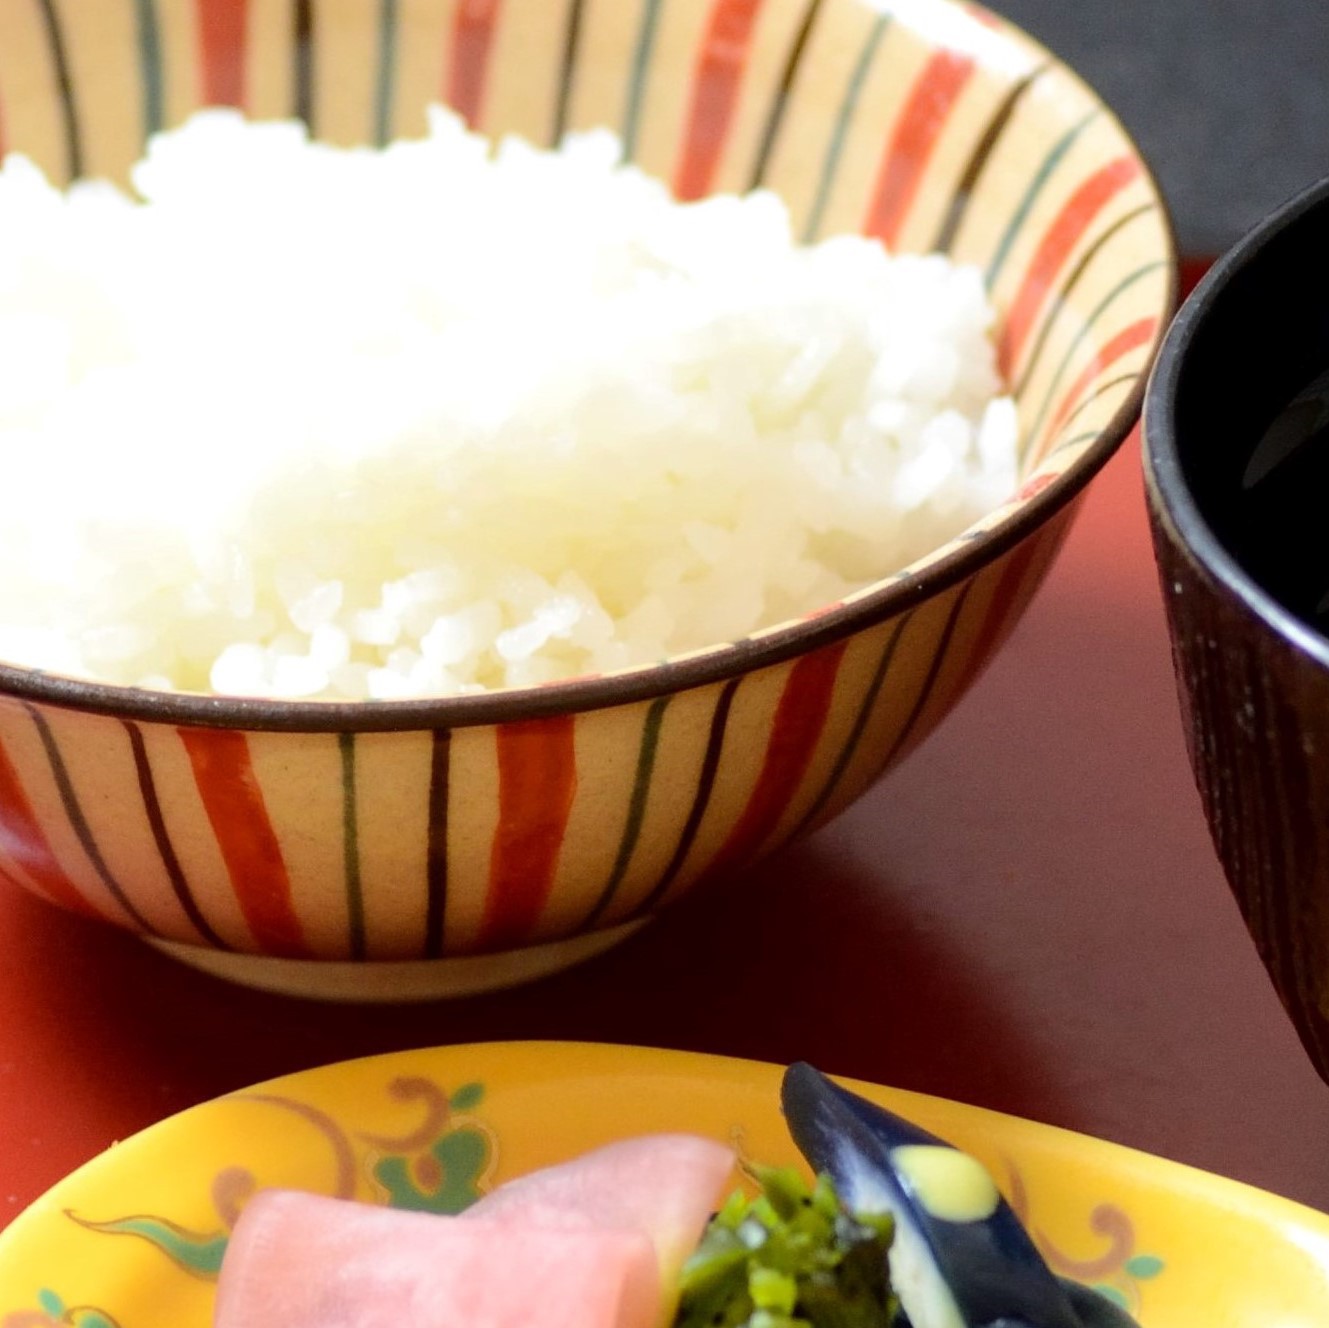 【朝食】お米に自信あり♪格別においしい「利根産こしひかり」で元気に一日のスタート。